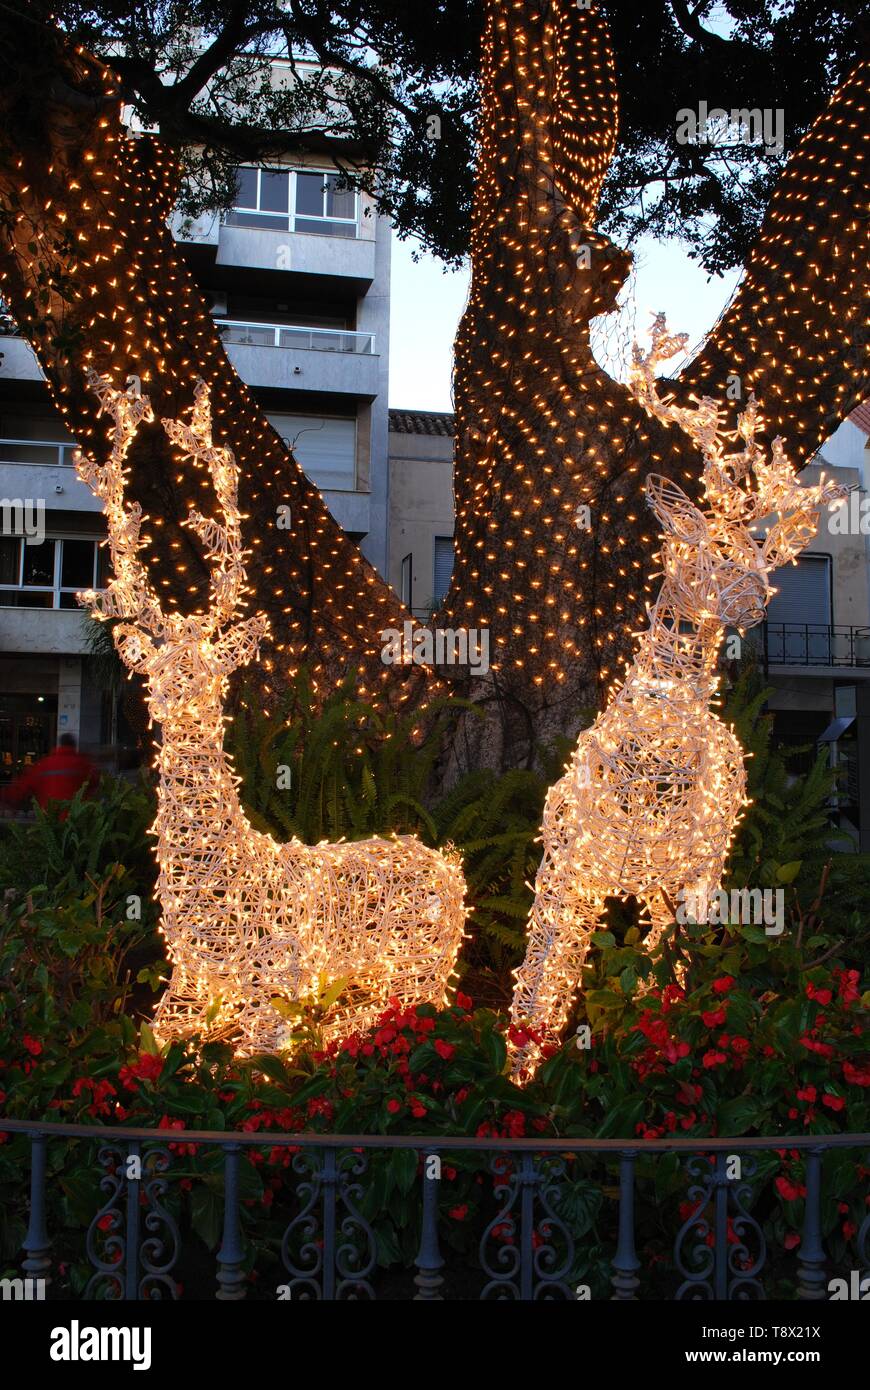 Natale renne wireframe decorazioni in Piazza della Costituzione (Plaza de la Constitucion) di notte, Fuengirola, Spagna. Foto Stock